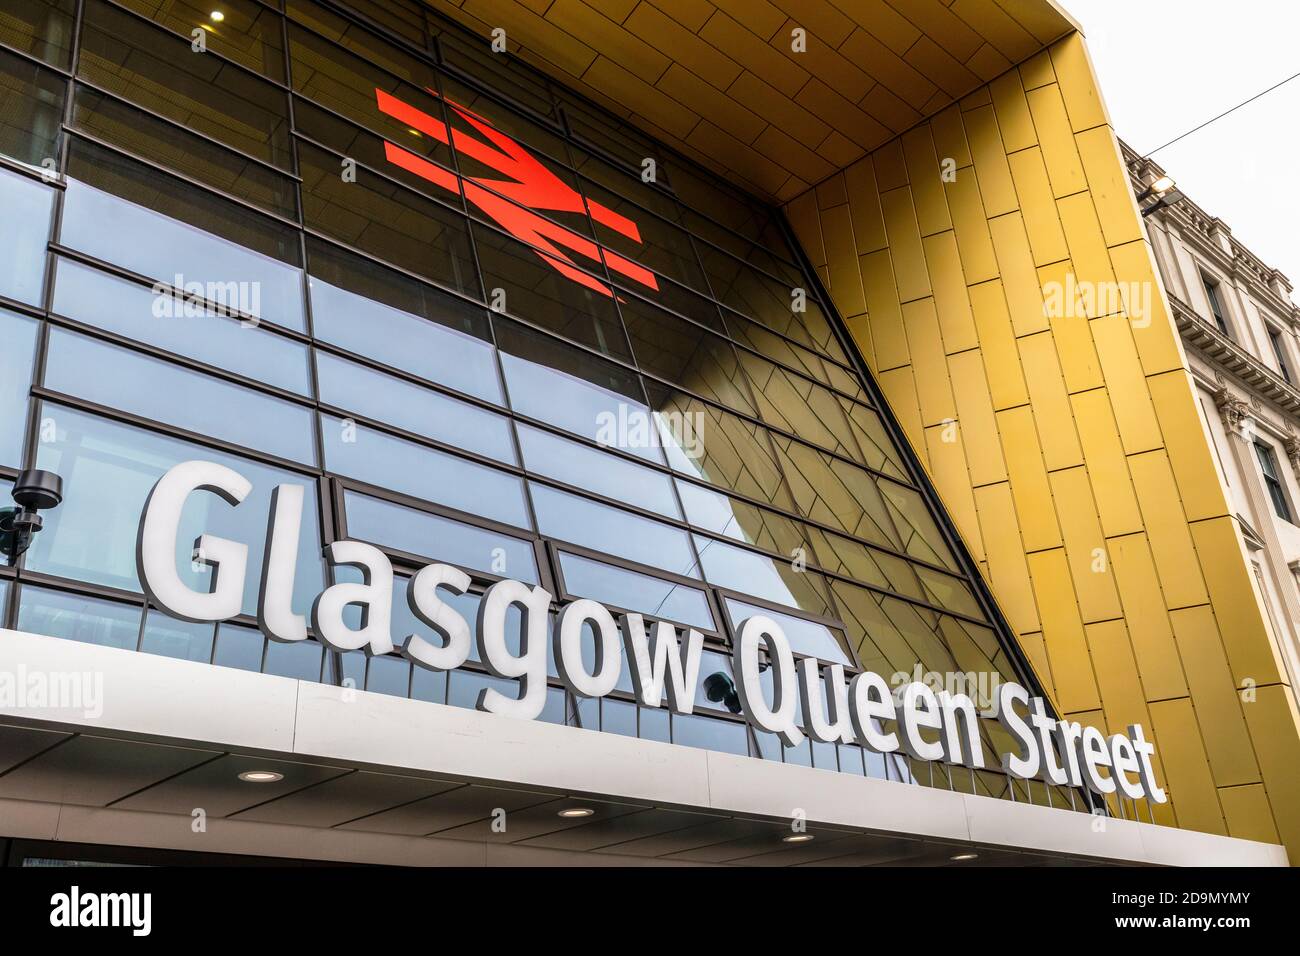 Esterno della stazione ferroviaria di Glasgow Queen Street dopo i lavori di ristrutturazione del 2020, Queens Street, Glasgow, UK Foto Stock